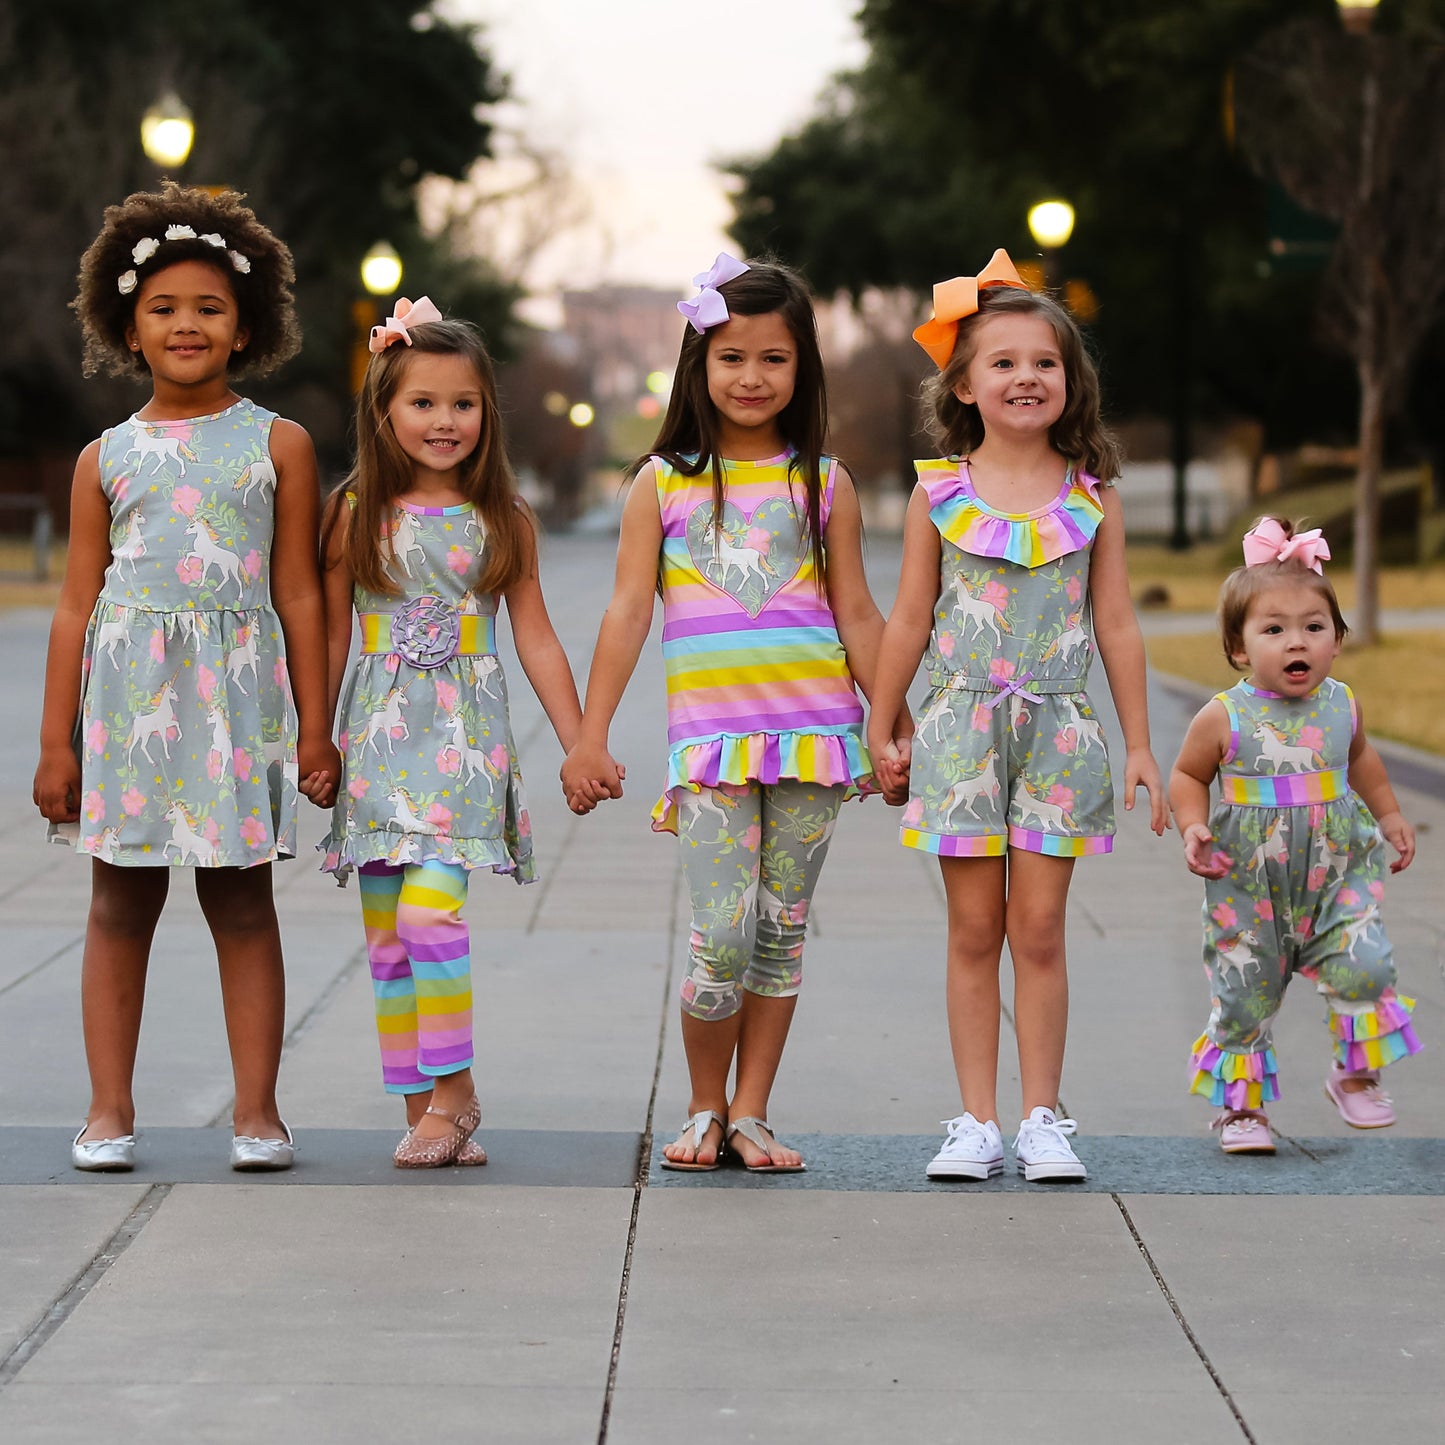 AnnLoren Boutique Baby Girls' Romper Unicorn & Rainbow Onesie Toddler Jumpsuit